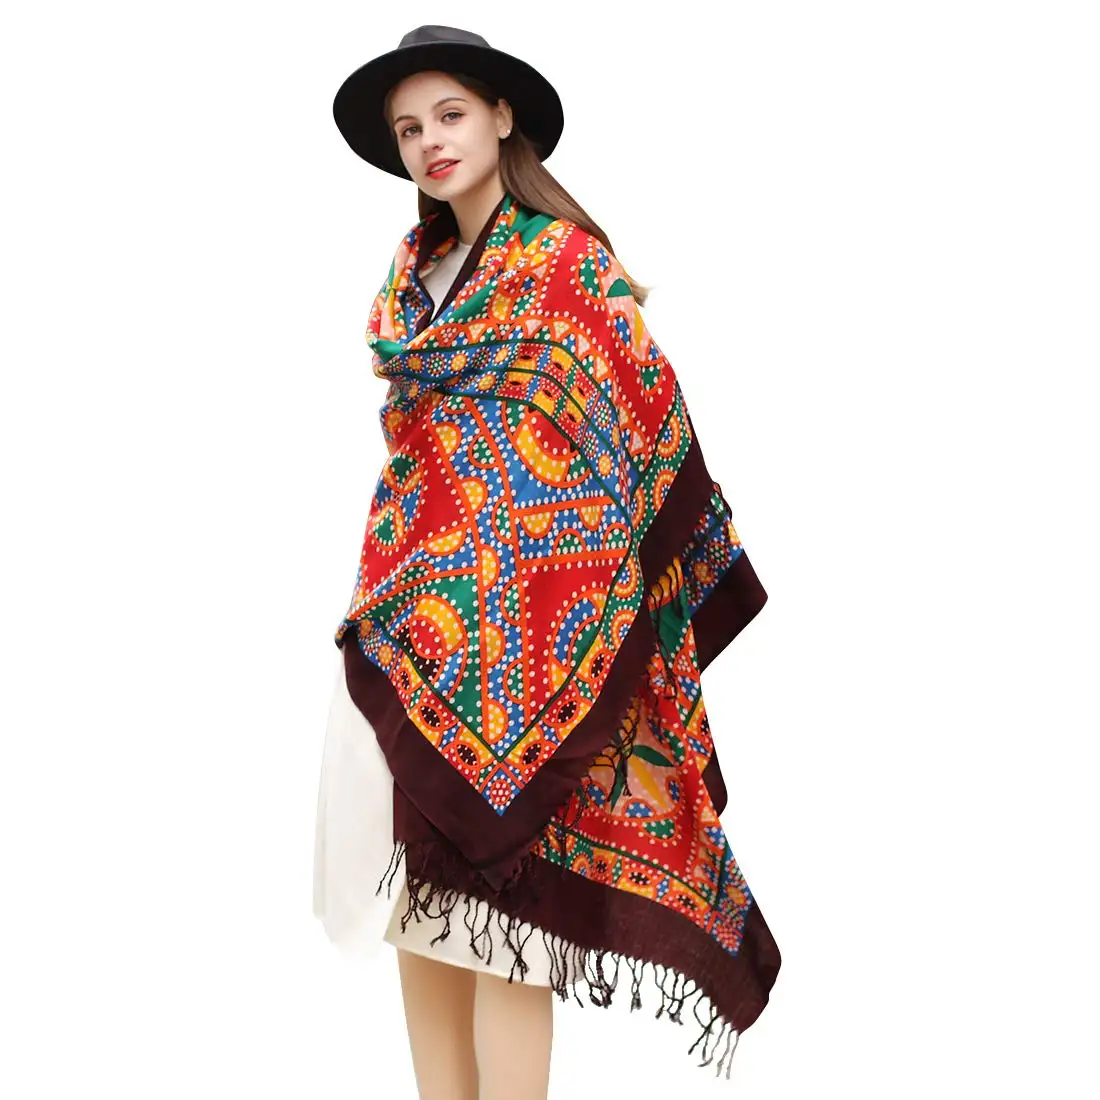 Mujer grande suave cachemir chales Pashmina envuelve luz bufanda lana bufanda invierno pañuelos en la cabeza